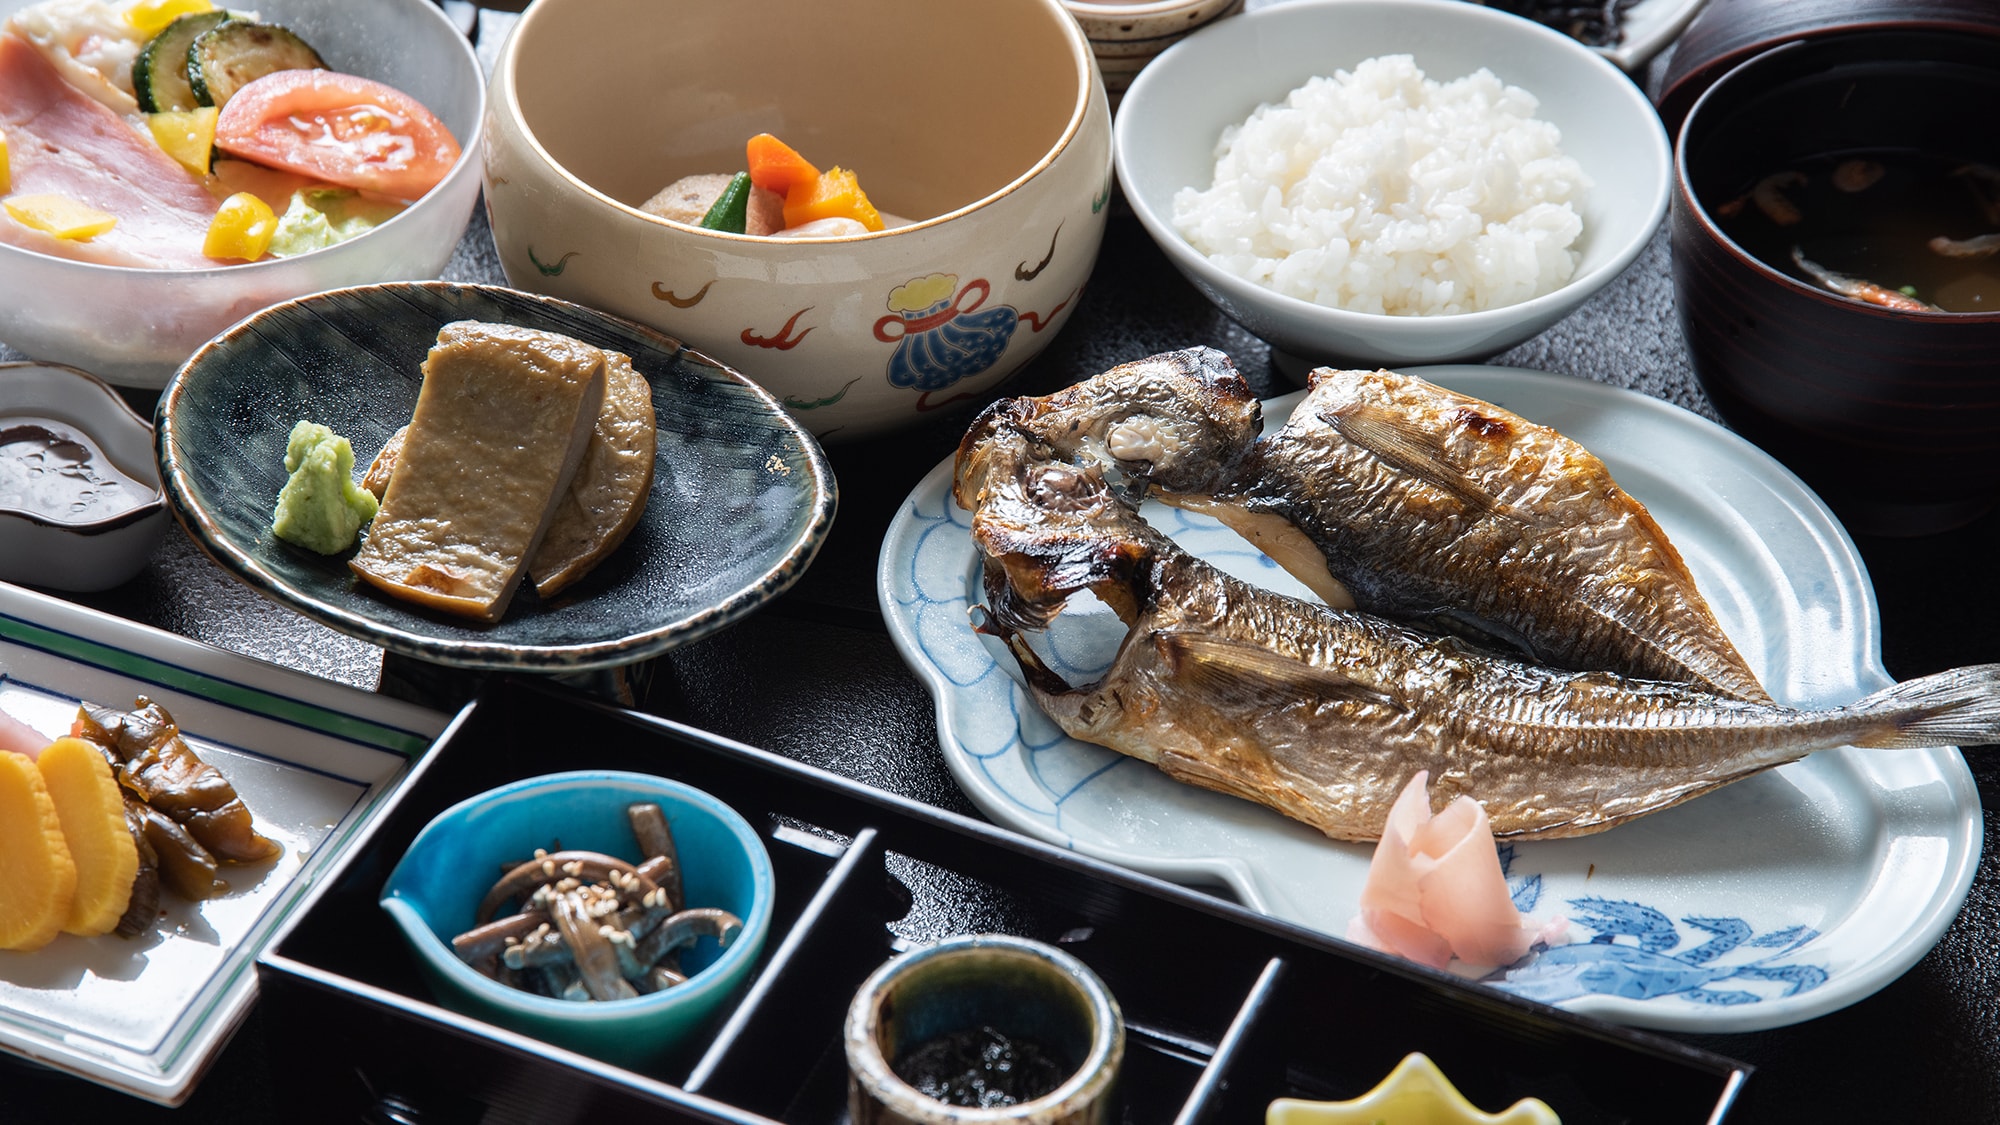 * [示例/ Kurohampen] 营养丰富，因为它是由鱼糜和蓝鱼制成的。温和的甜味增强了鲜味